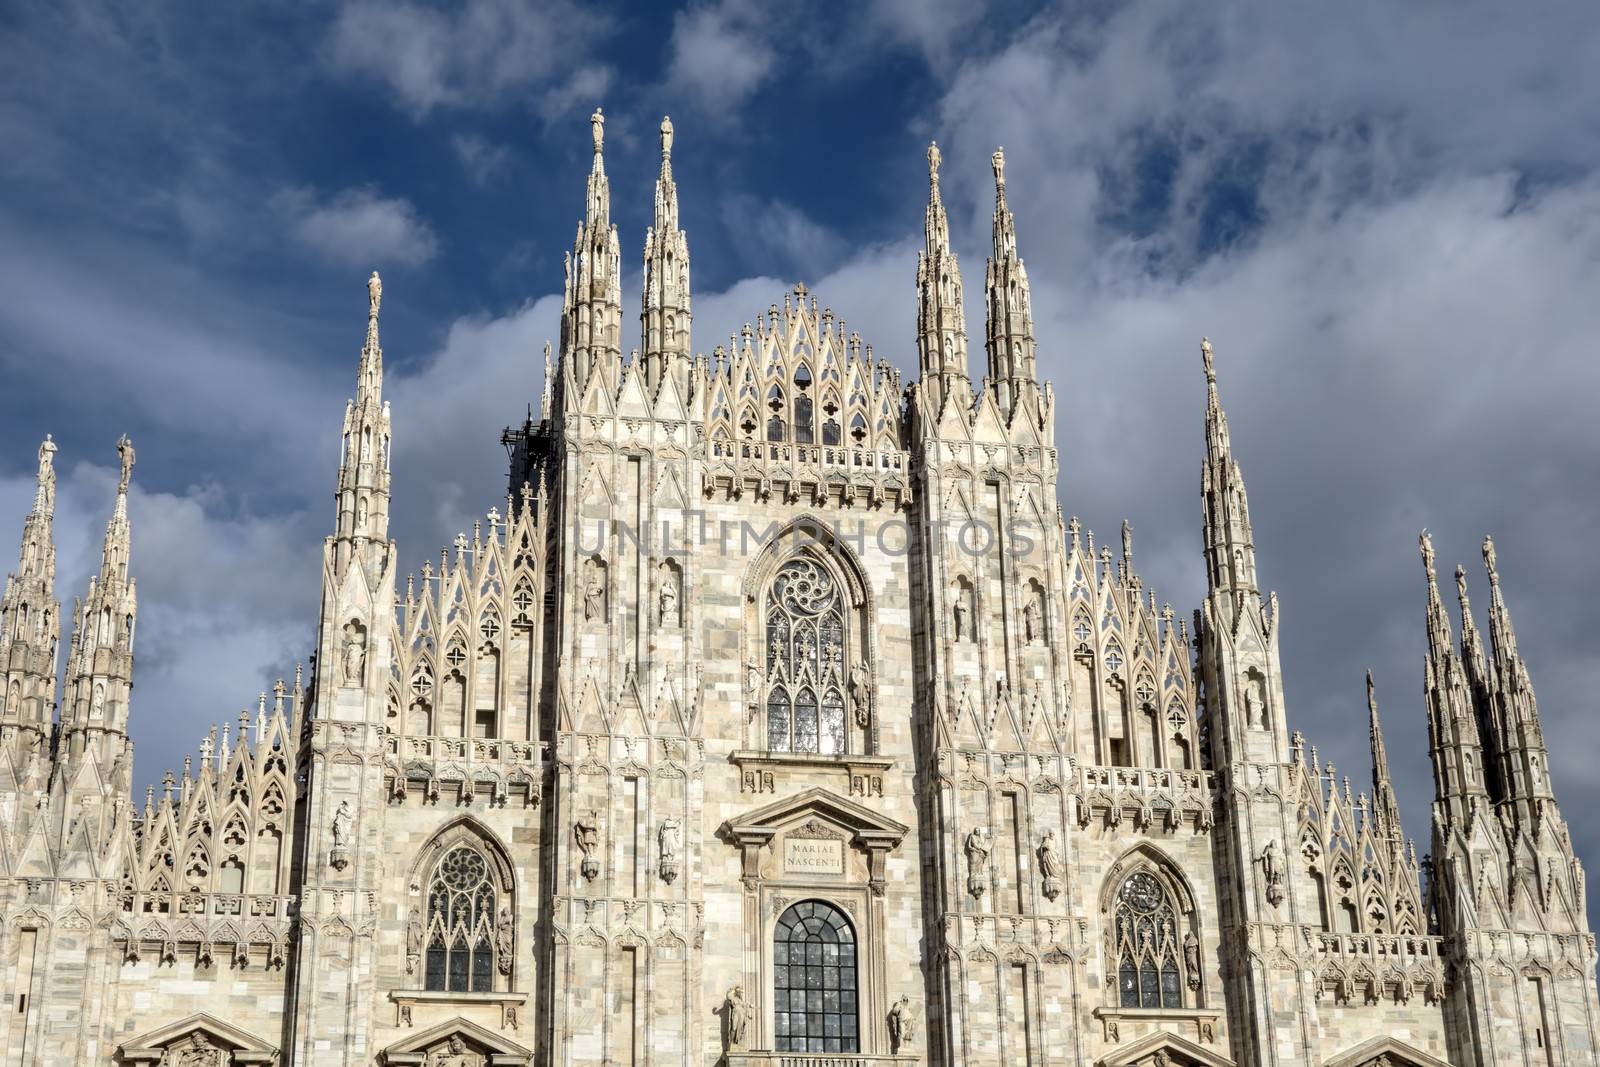 Facade of Cathedral Duomo, Milan, Italy 